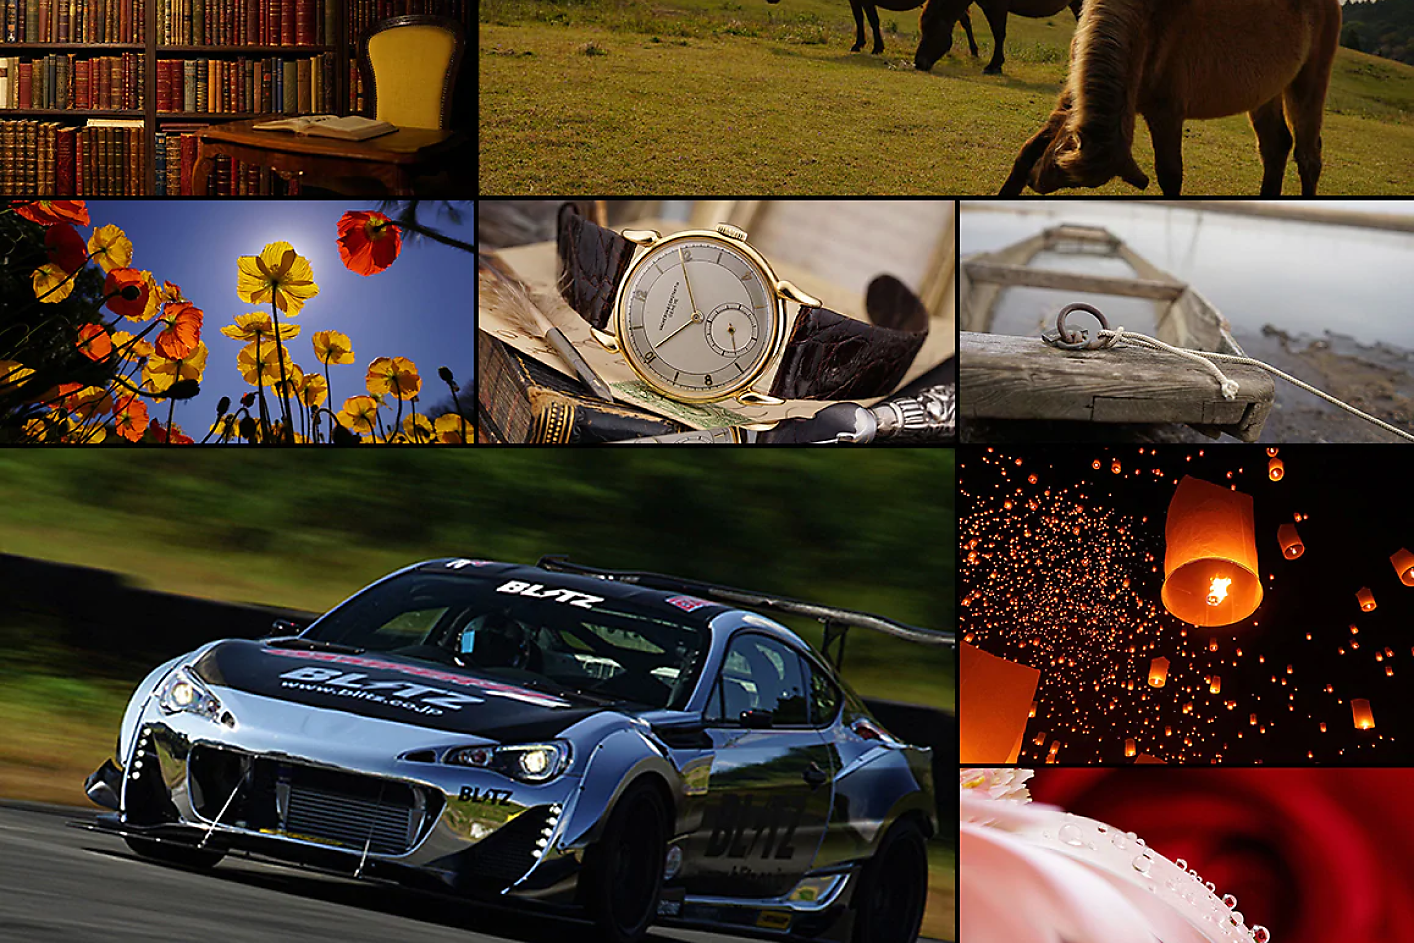 Красочный коллаж из восьми изображений, в том числе гоночный автомобиль, лошадь, часы и цветы